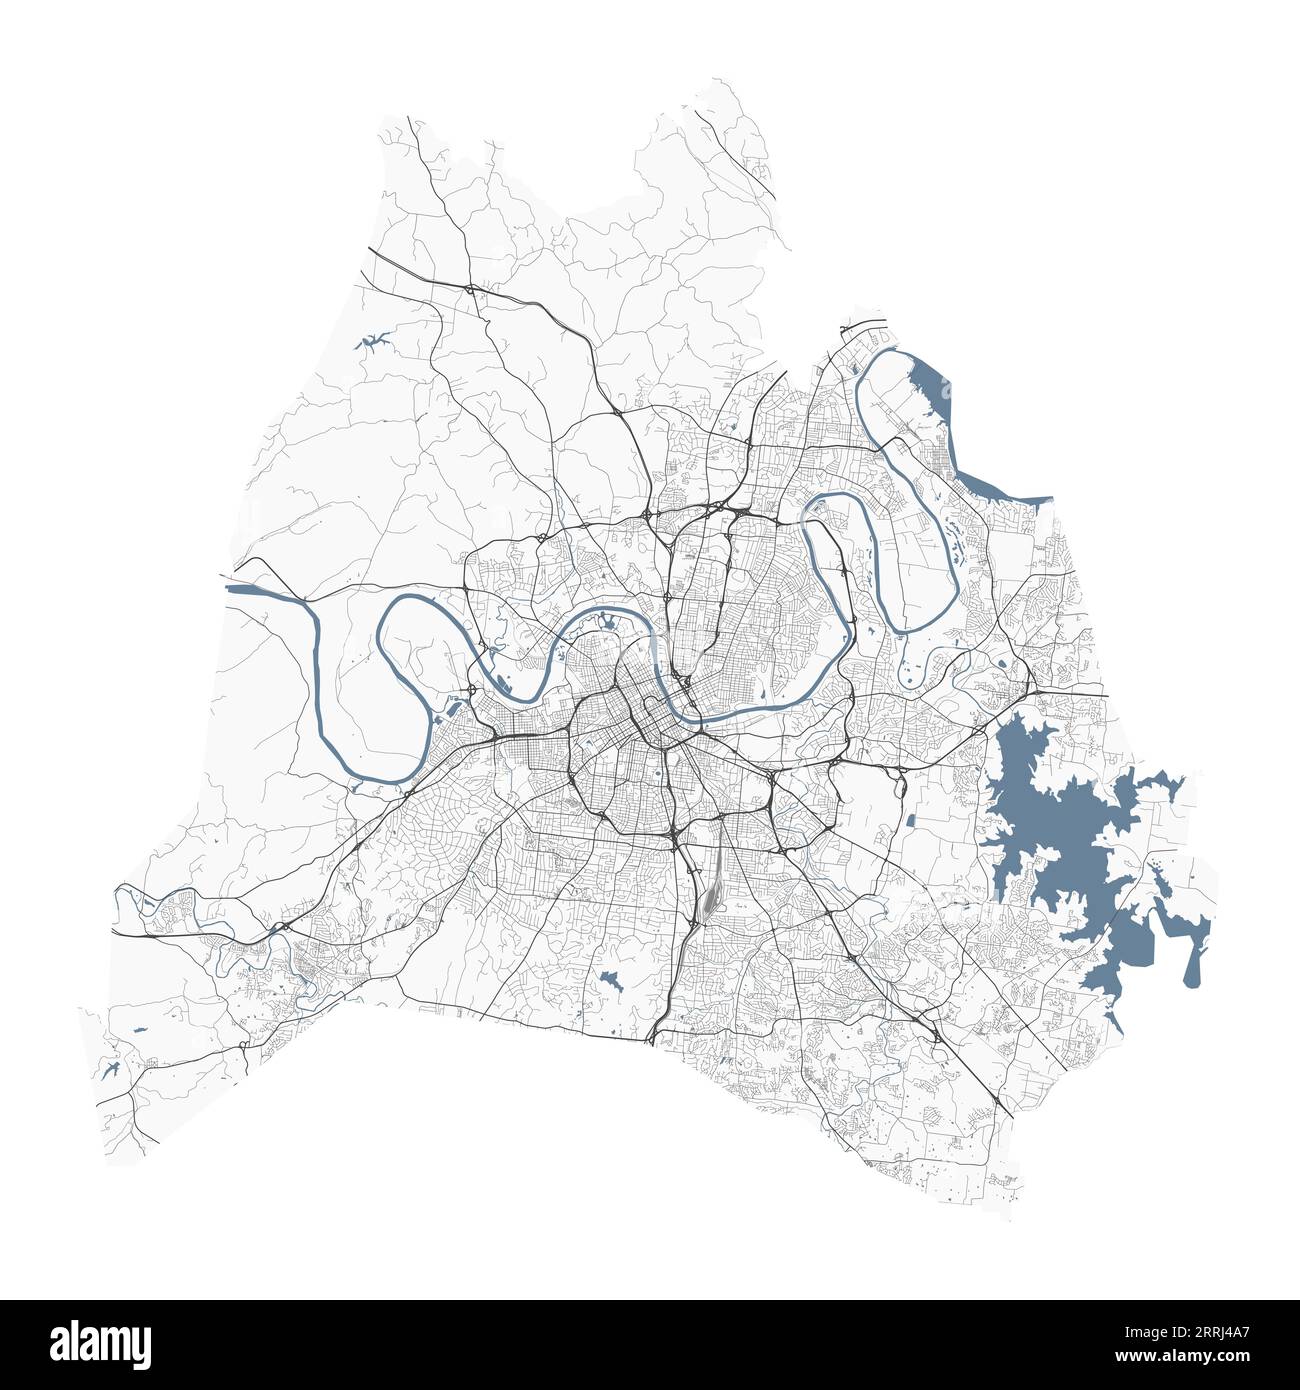 Nashville Karte, amerikanische Stadt. Stadtplan mit Flüssen und Straßen, Parks und Eisenbahnen. Vektorillustration. Stock Vektor